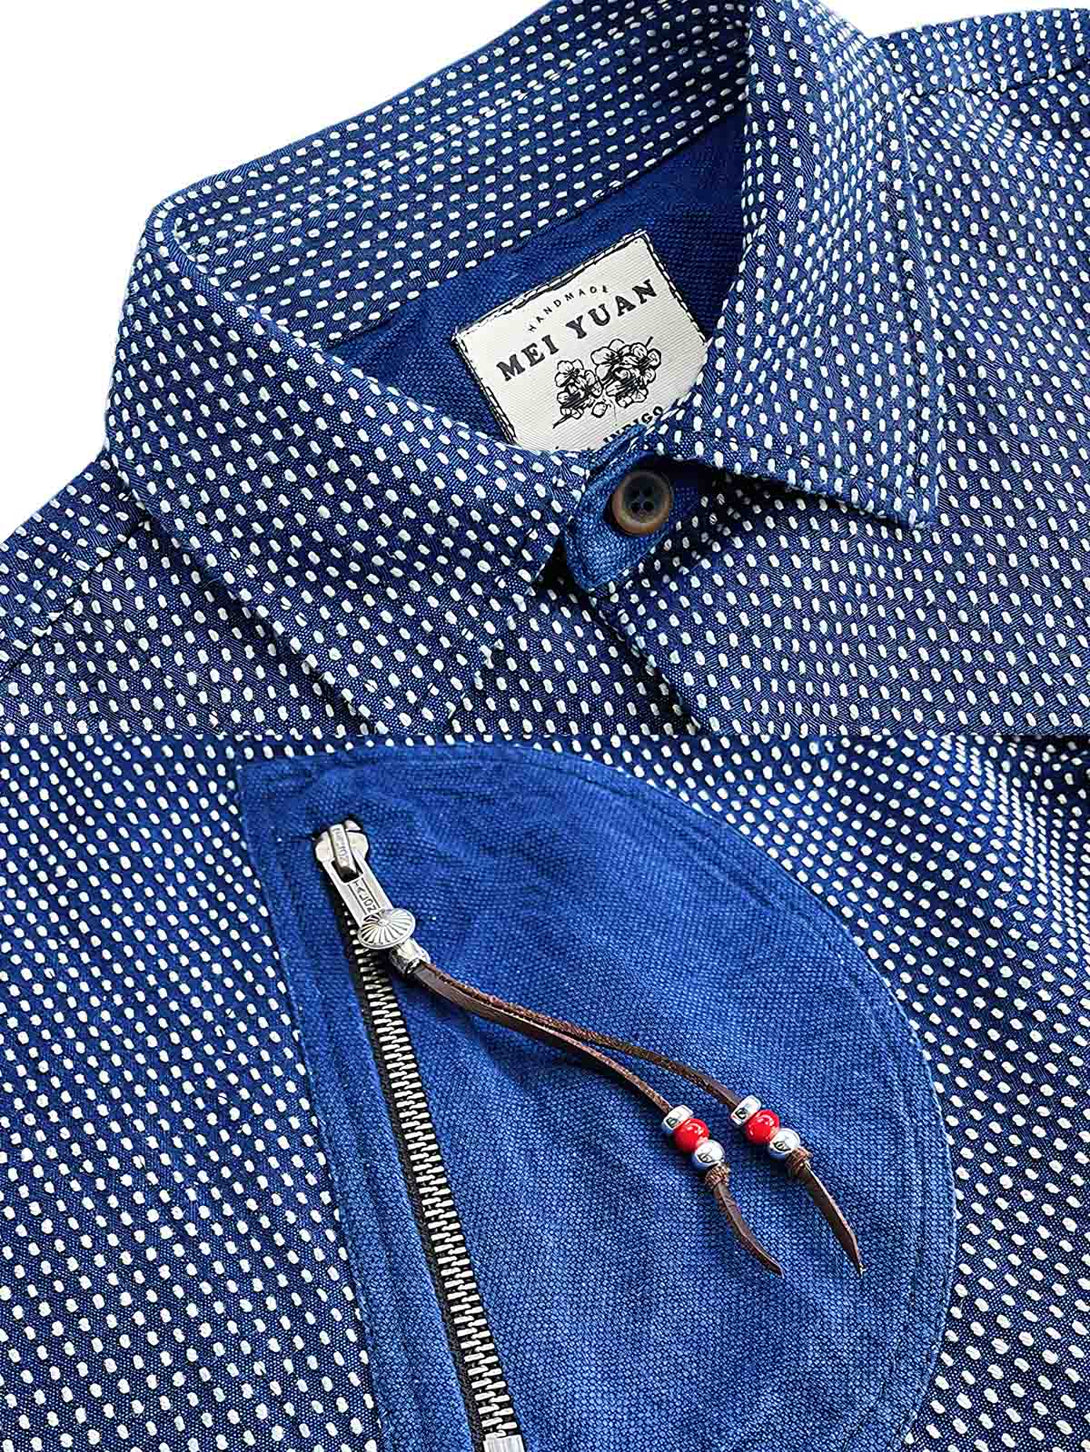  藍染刺し子ワークシャツジャケット細部展示図